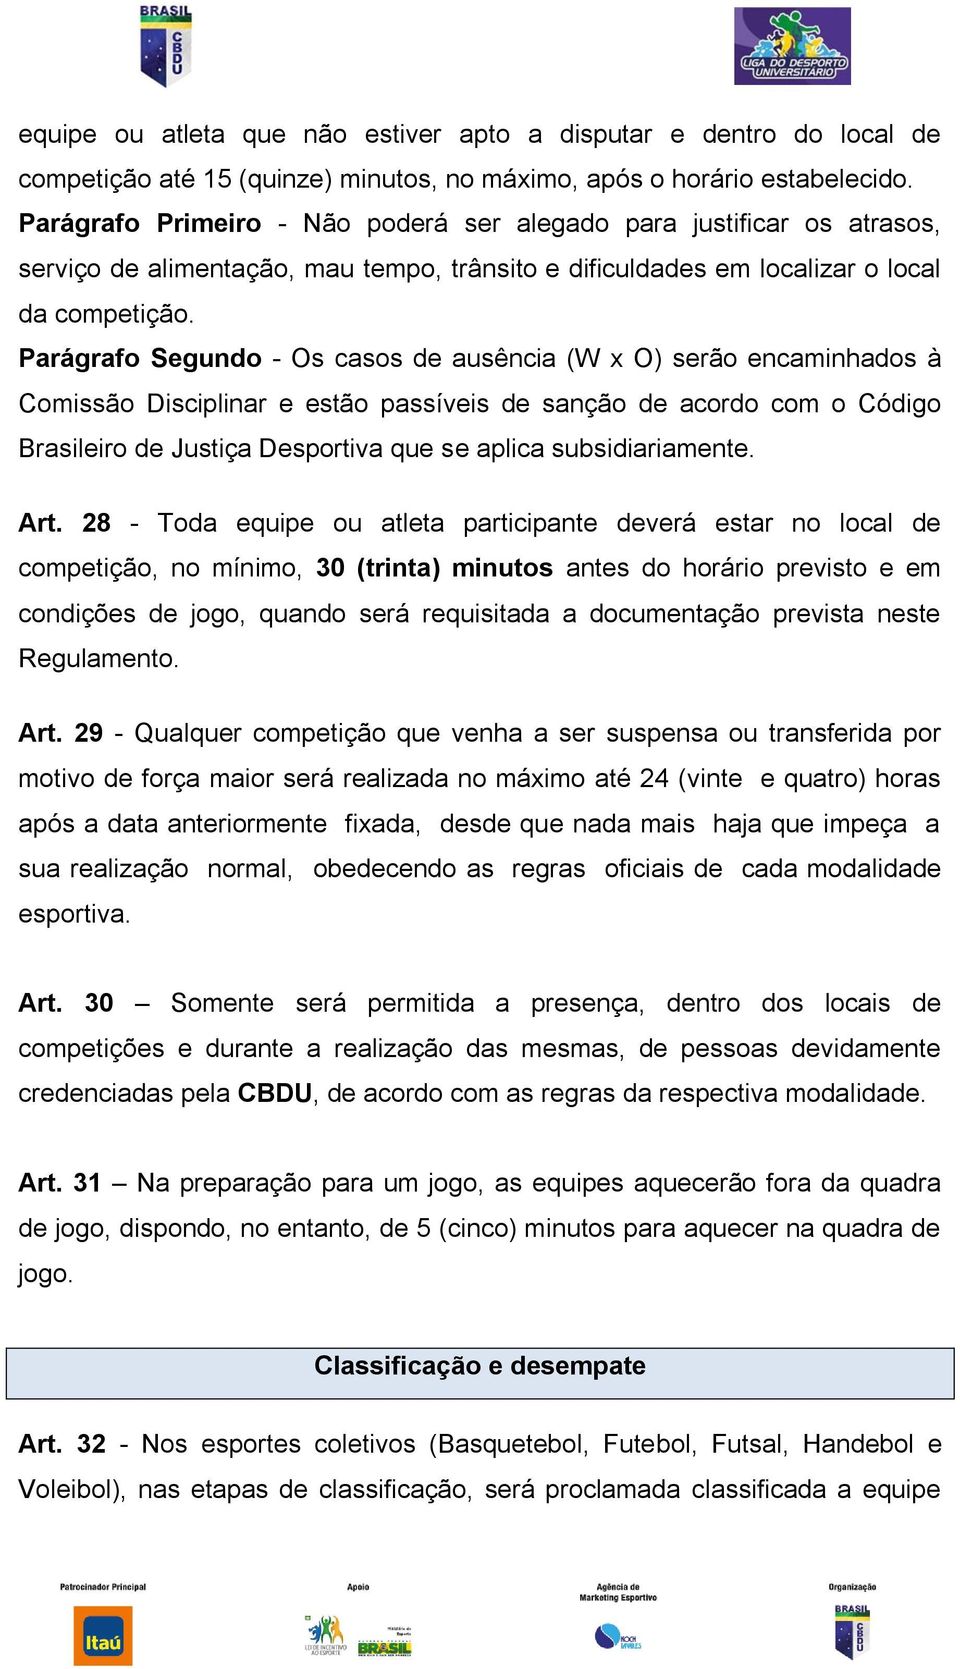 Parágrafo Segundo - Os casos de ausência (W x O) serão encaminhados à Comissão Disciplinar e estão passíveis de sanção de acordo com o Código Brasileiro de Justiça Desportiva que se aplica